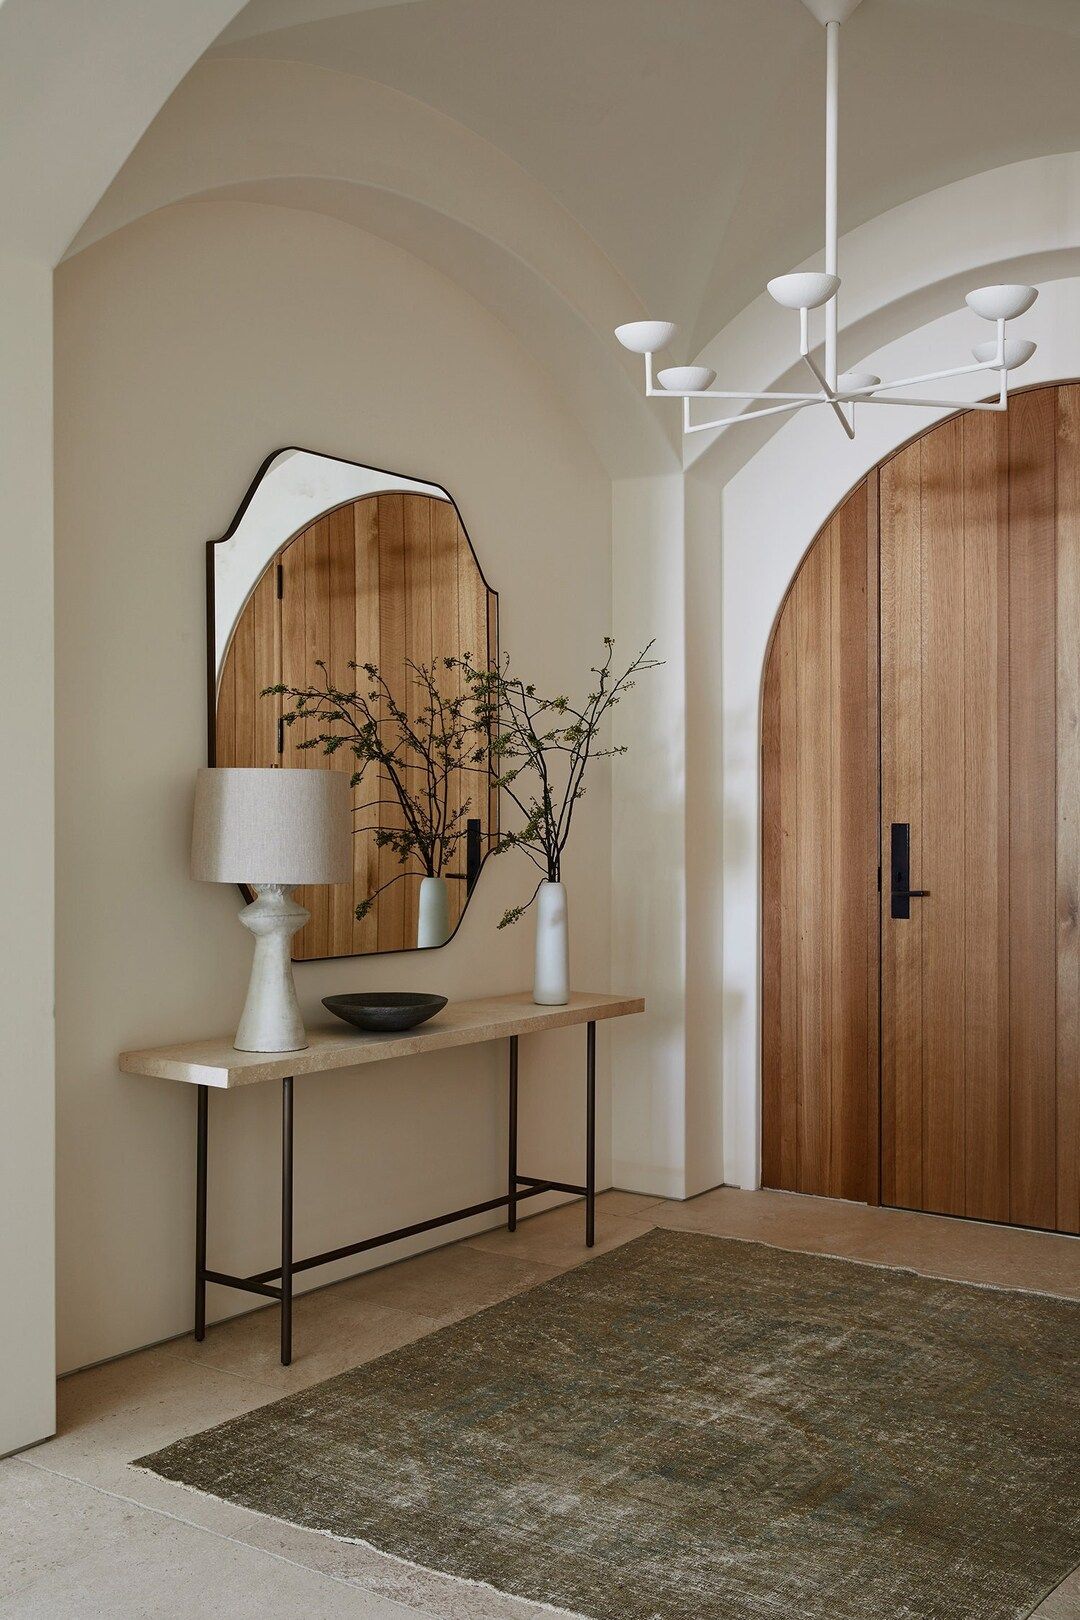 Architectural Mirror Home Decor Asymmetrical Design Wall Miror Irregular Interior Mirror | Etsy (US)